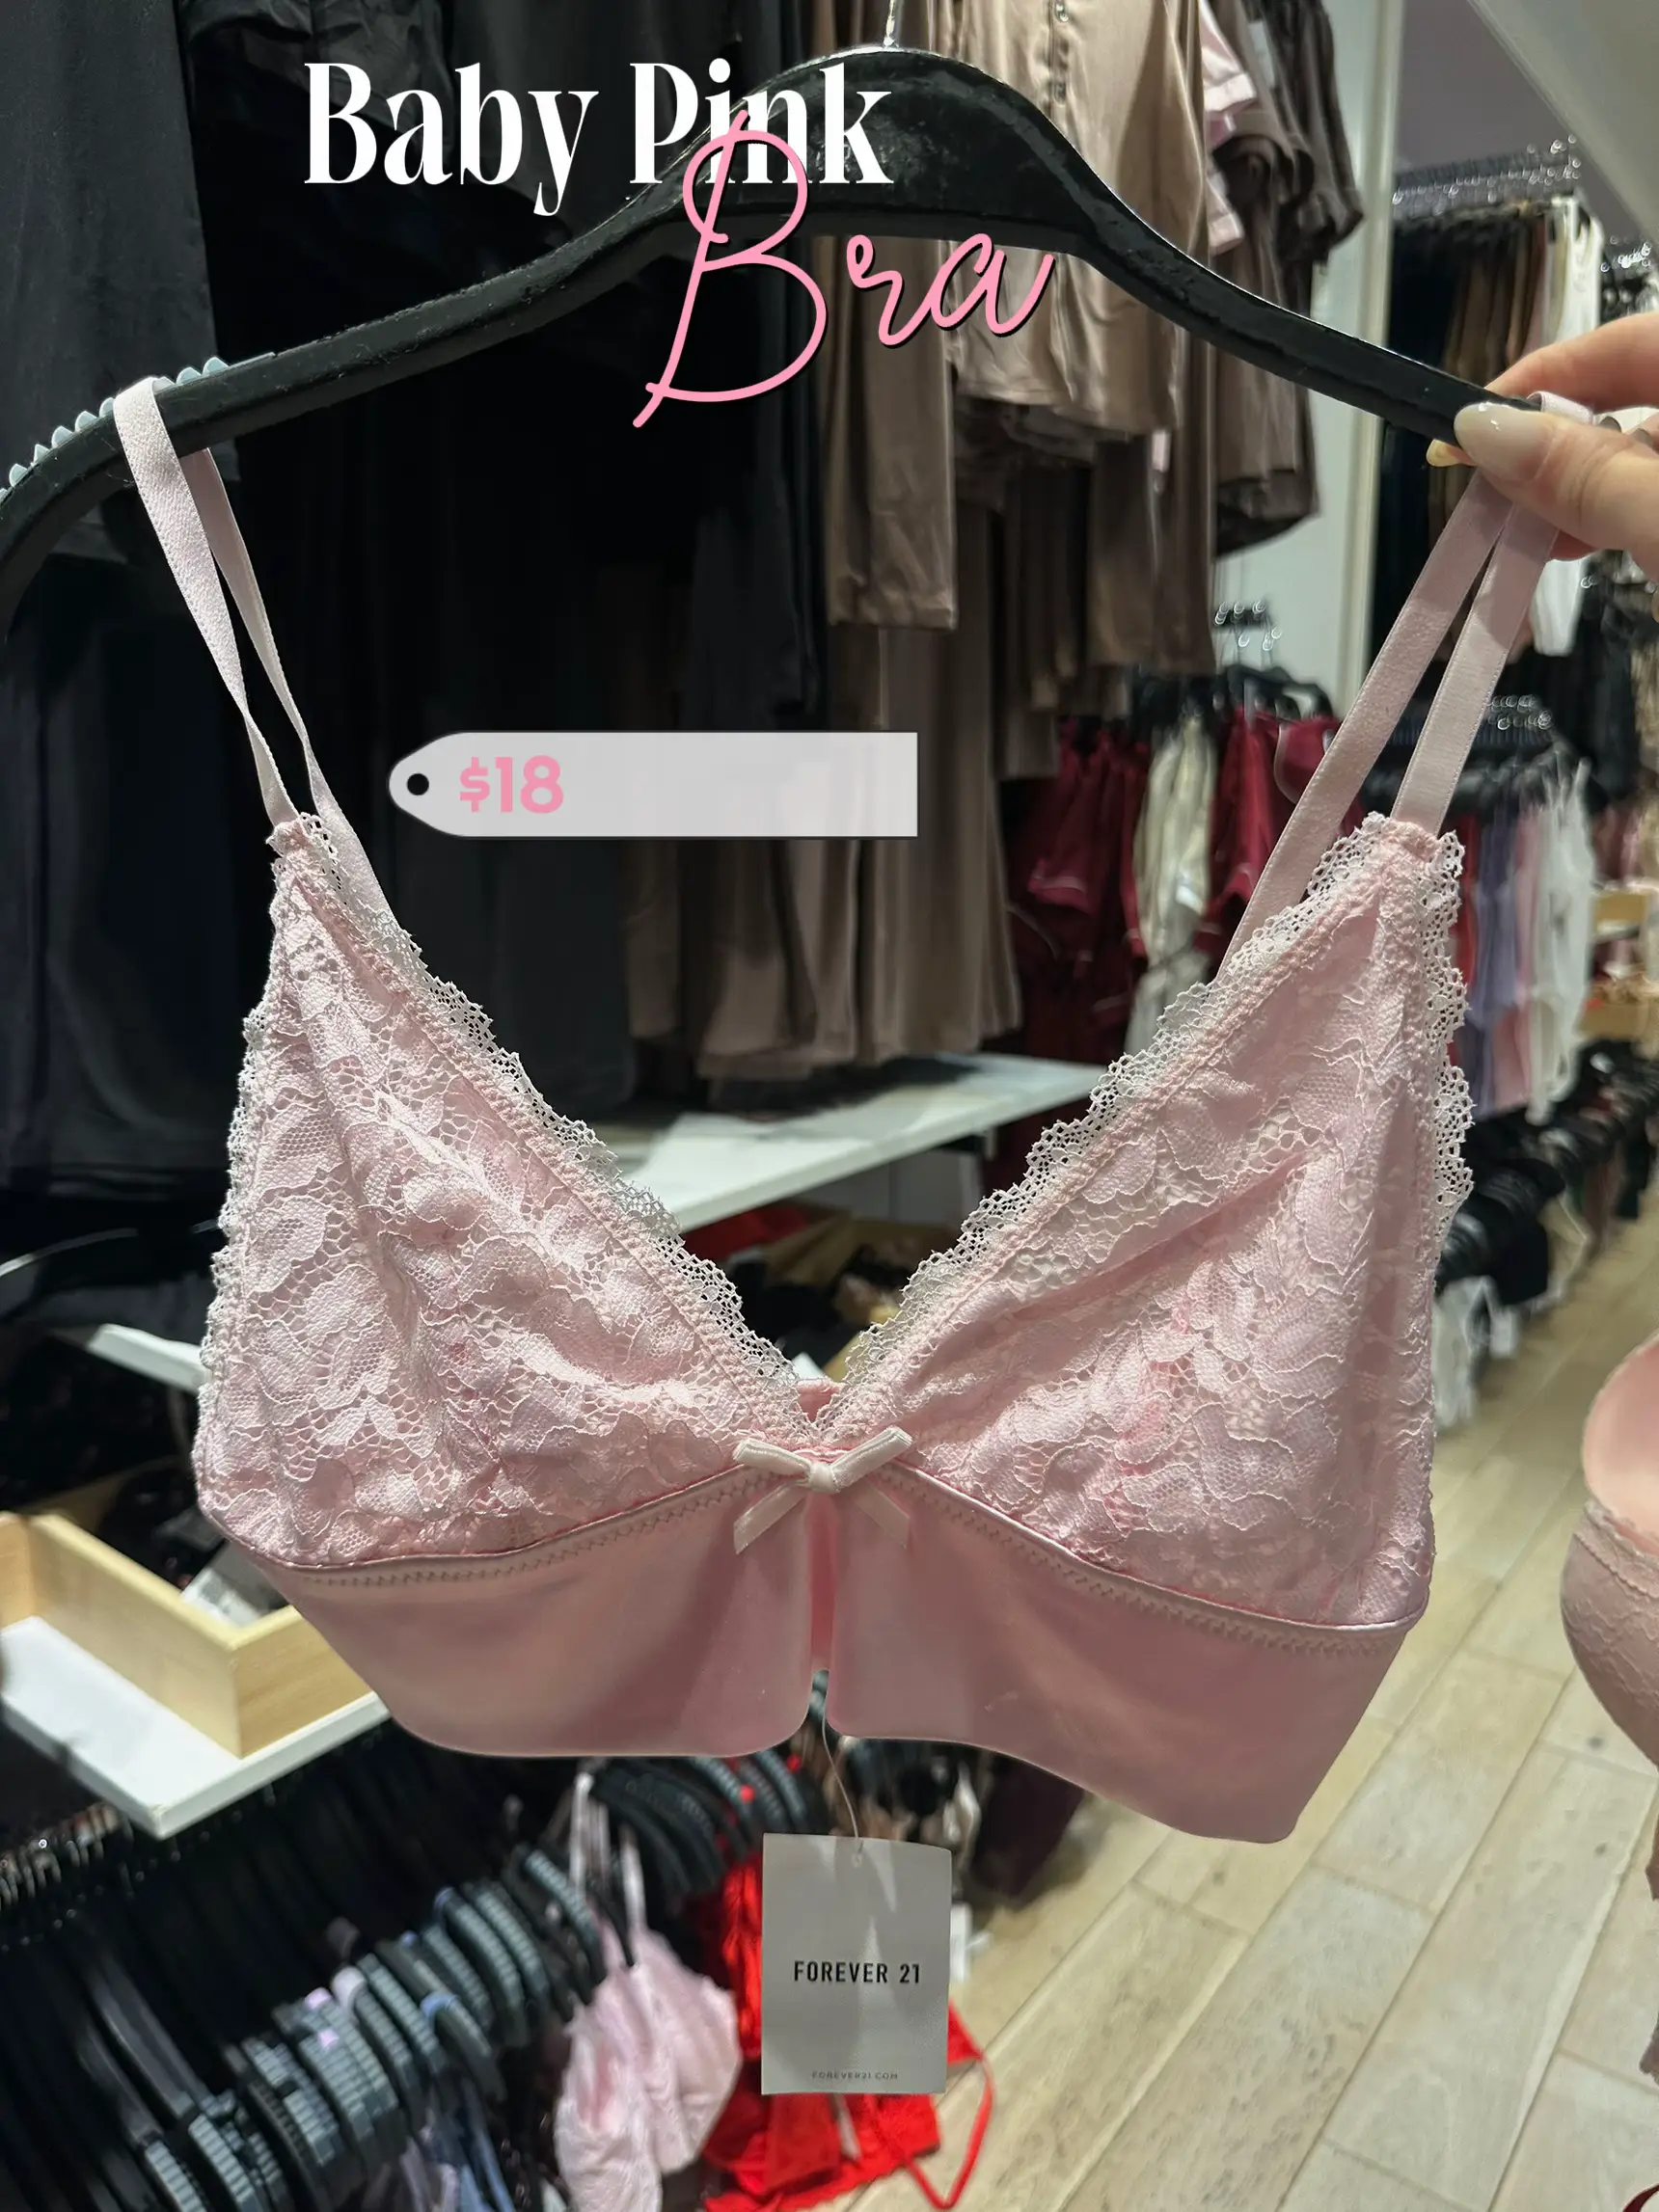 Sanrio Hello Kitty Cute Bra Back Straps Underwear Women Sexy Black Cup  Lingerie Halter Design Y2k Cotton Undies Female Top Bras